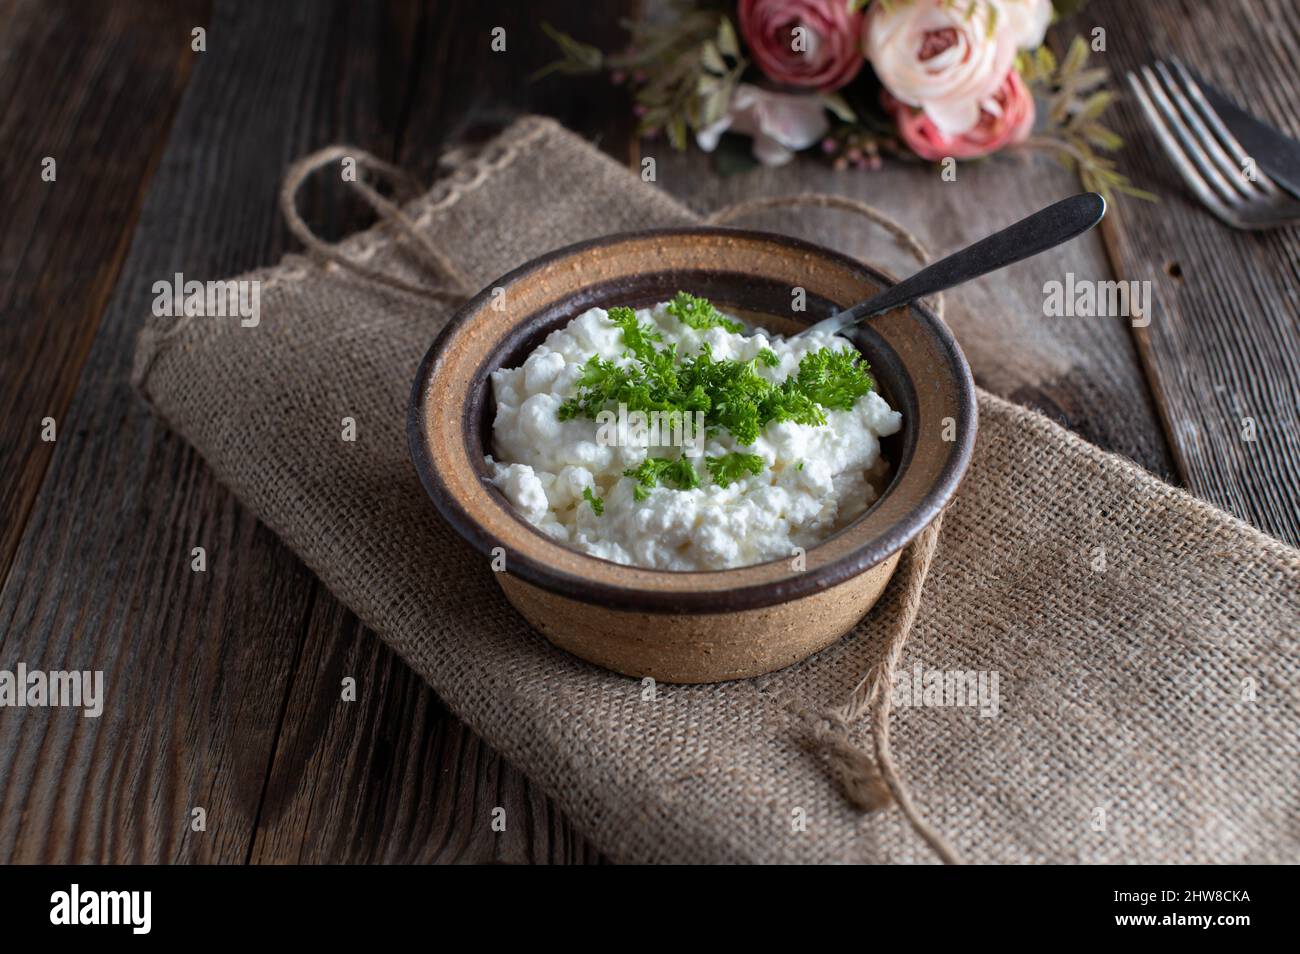 Formaggio casolare con erbe servite con cucchiaio in una rustica ciotola di gres Foto Stock